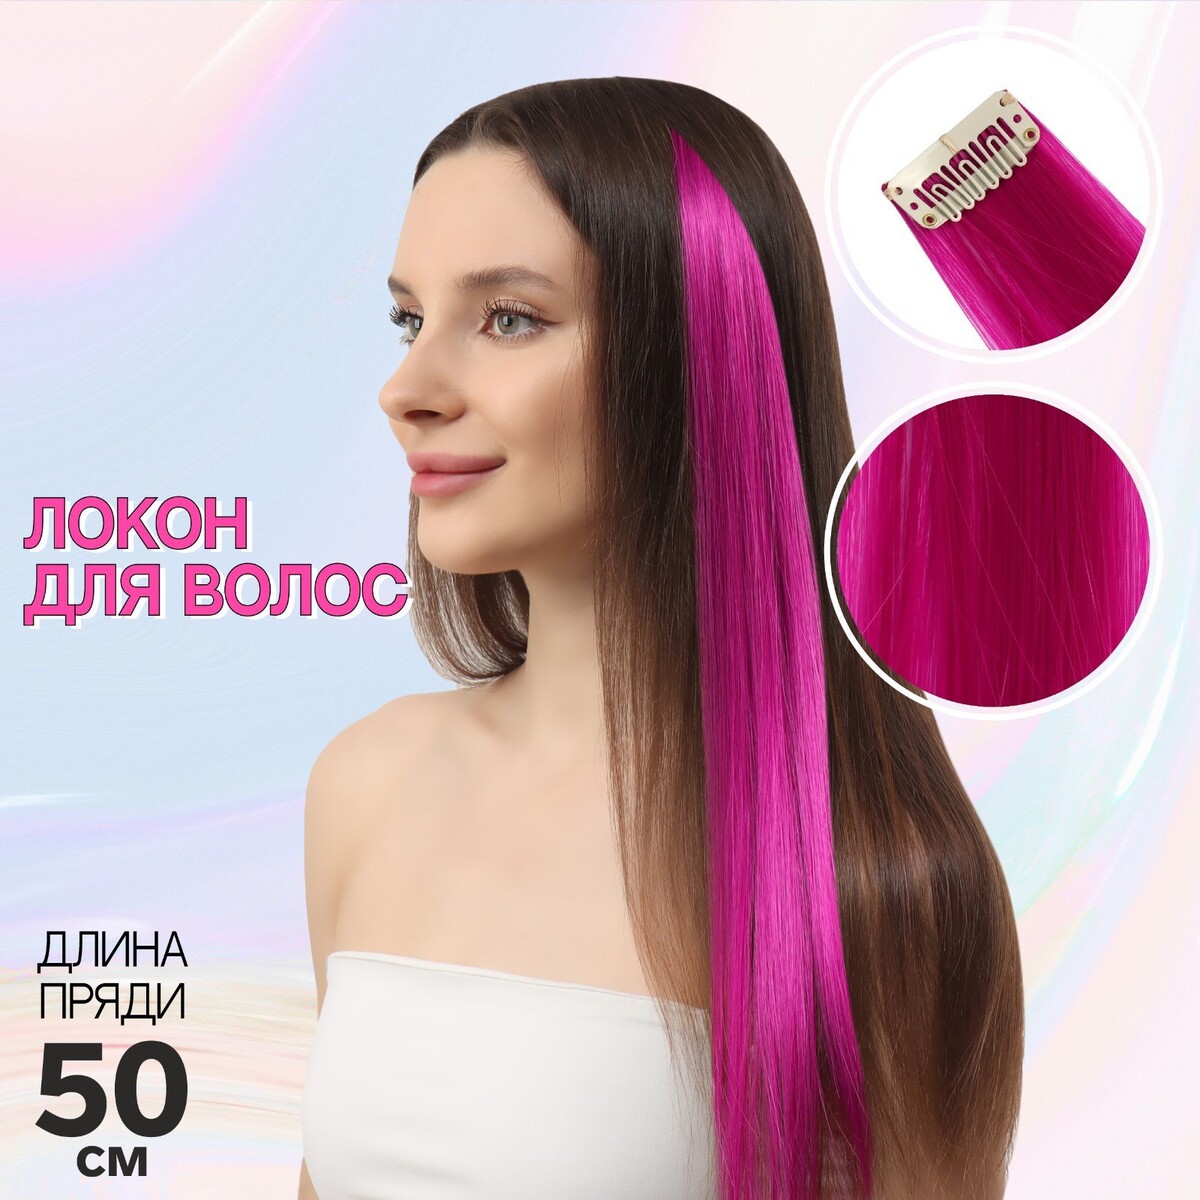 Локон накладной, прямой волос, на заколке, 50 см, 5 гр, цвет фиолетовый локон накладной прямой волос на заколке 50 см 5 гр красный